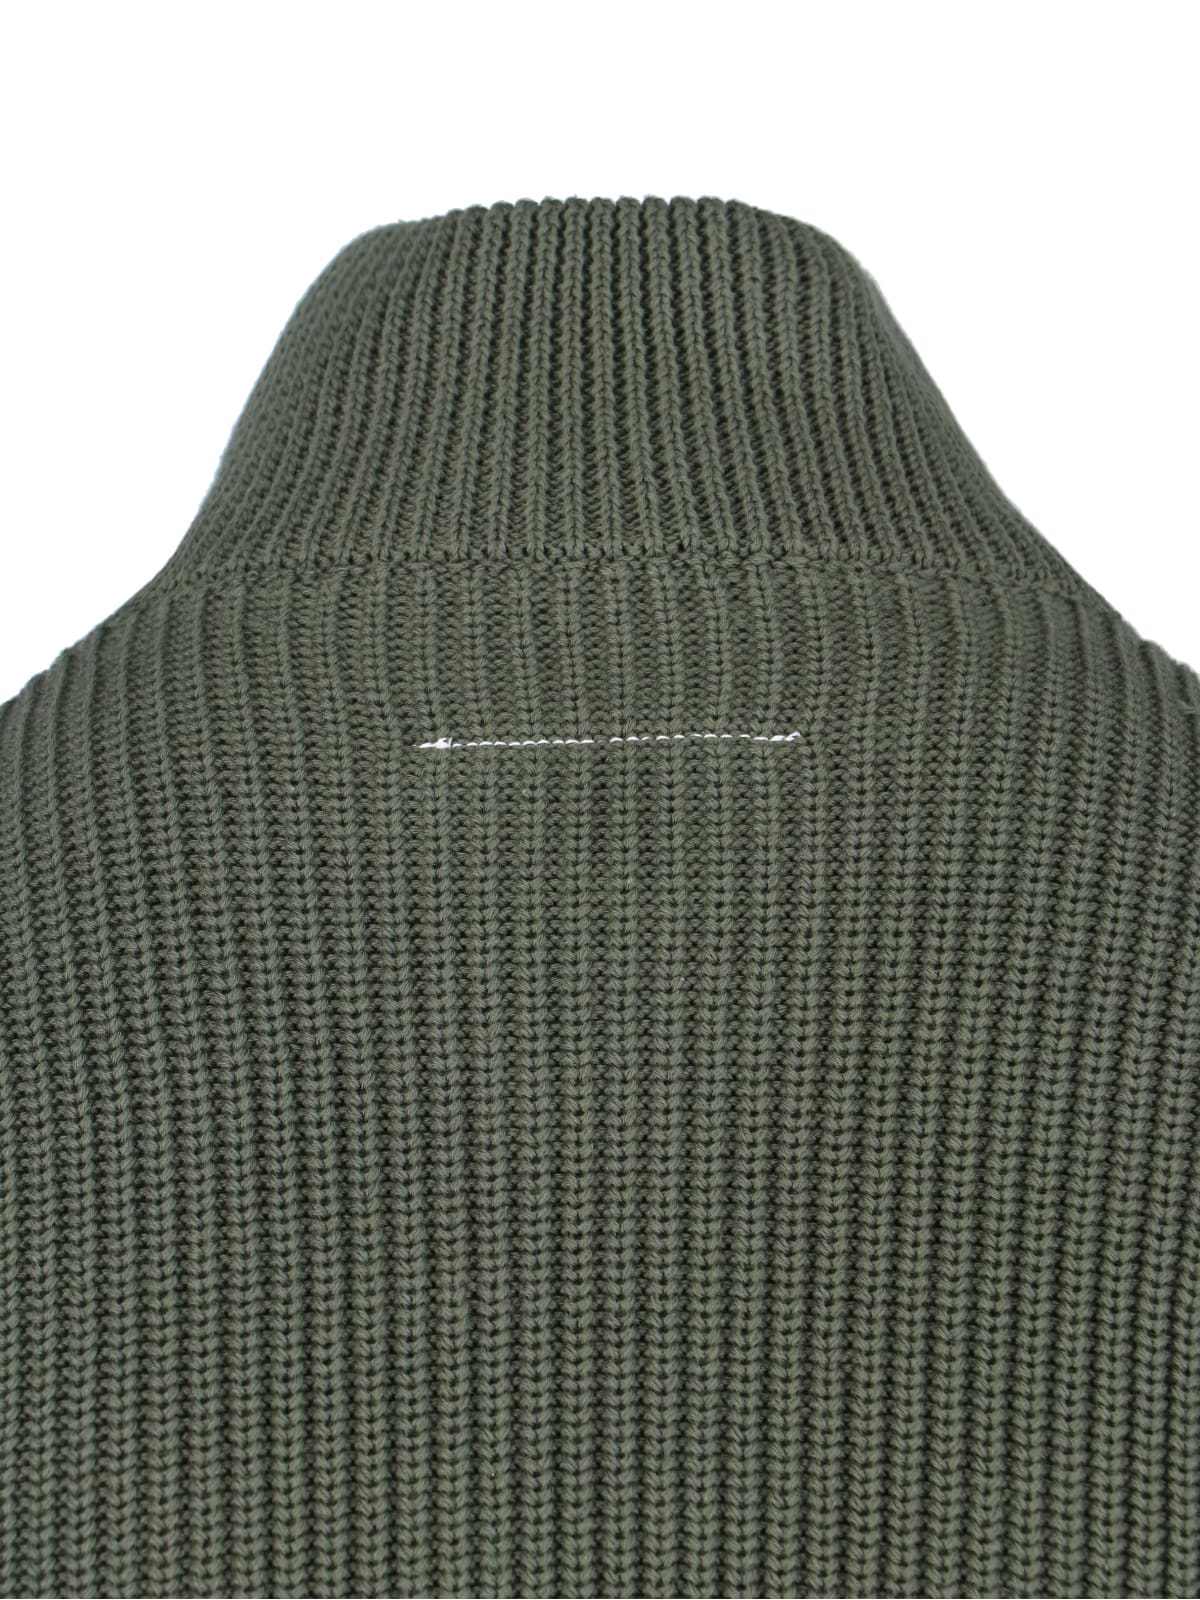 Shop Mm6 Maison Margiela Zip Sweater In Green